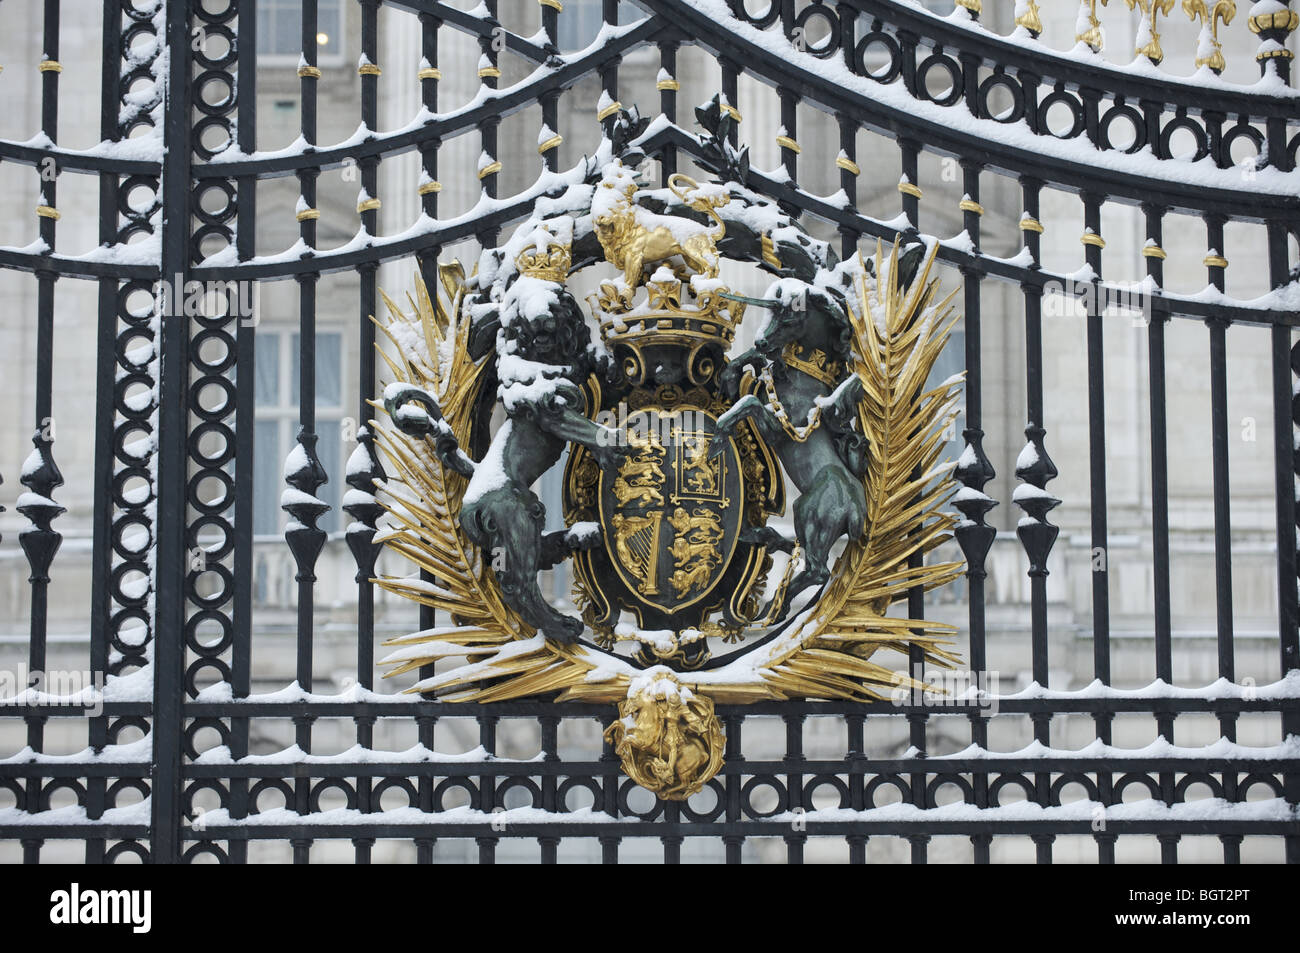 Les armoiries royales sur Buckingham Palace gates dans la neige Banque D'Images